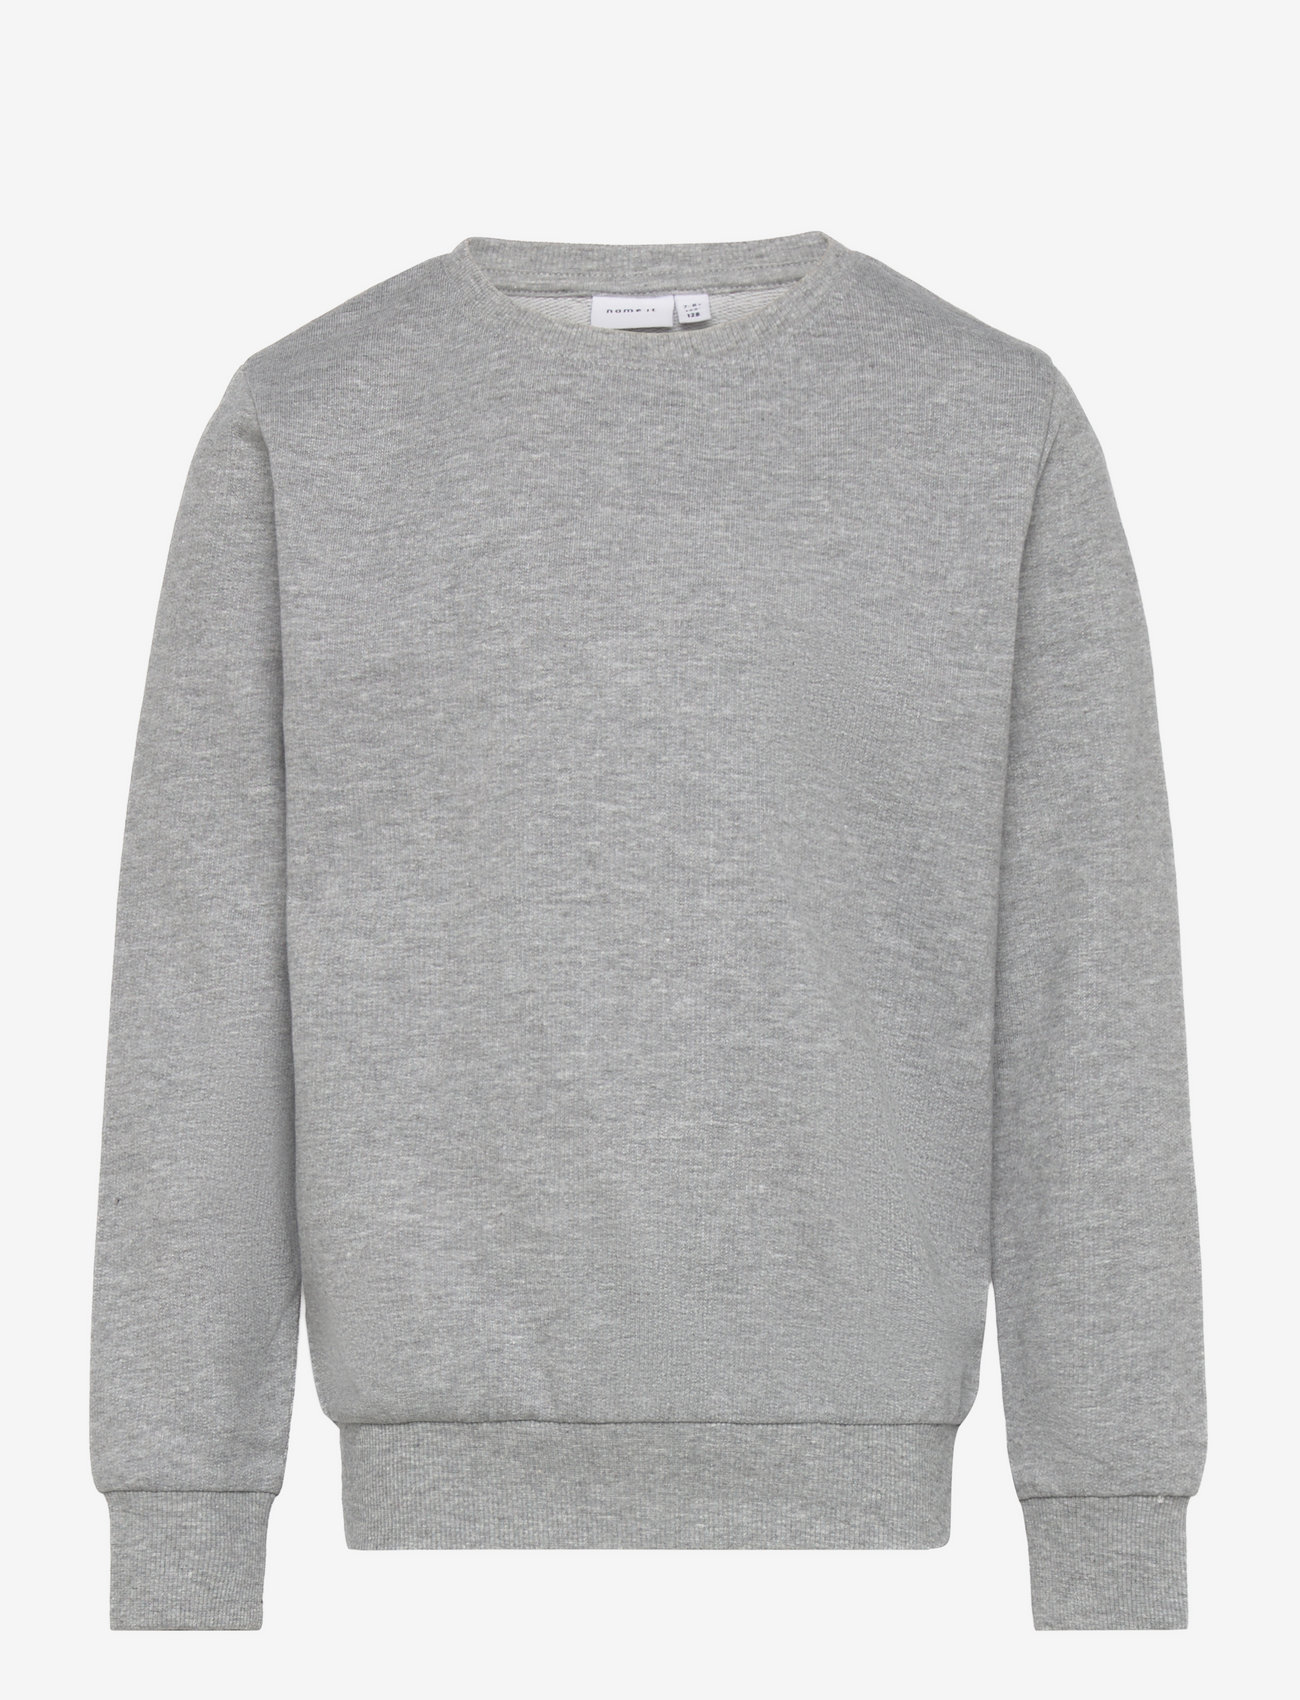 name it - NKMNESWEAT UNB NOOS - sweatshirts - grey melange - 0